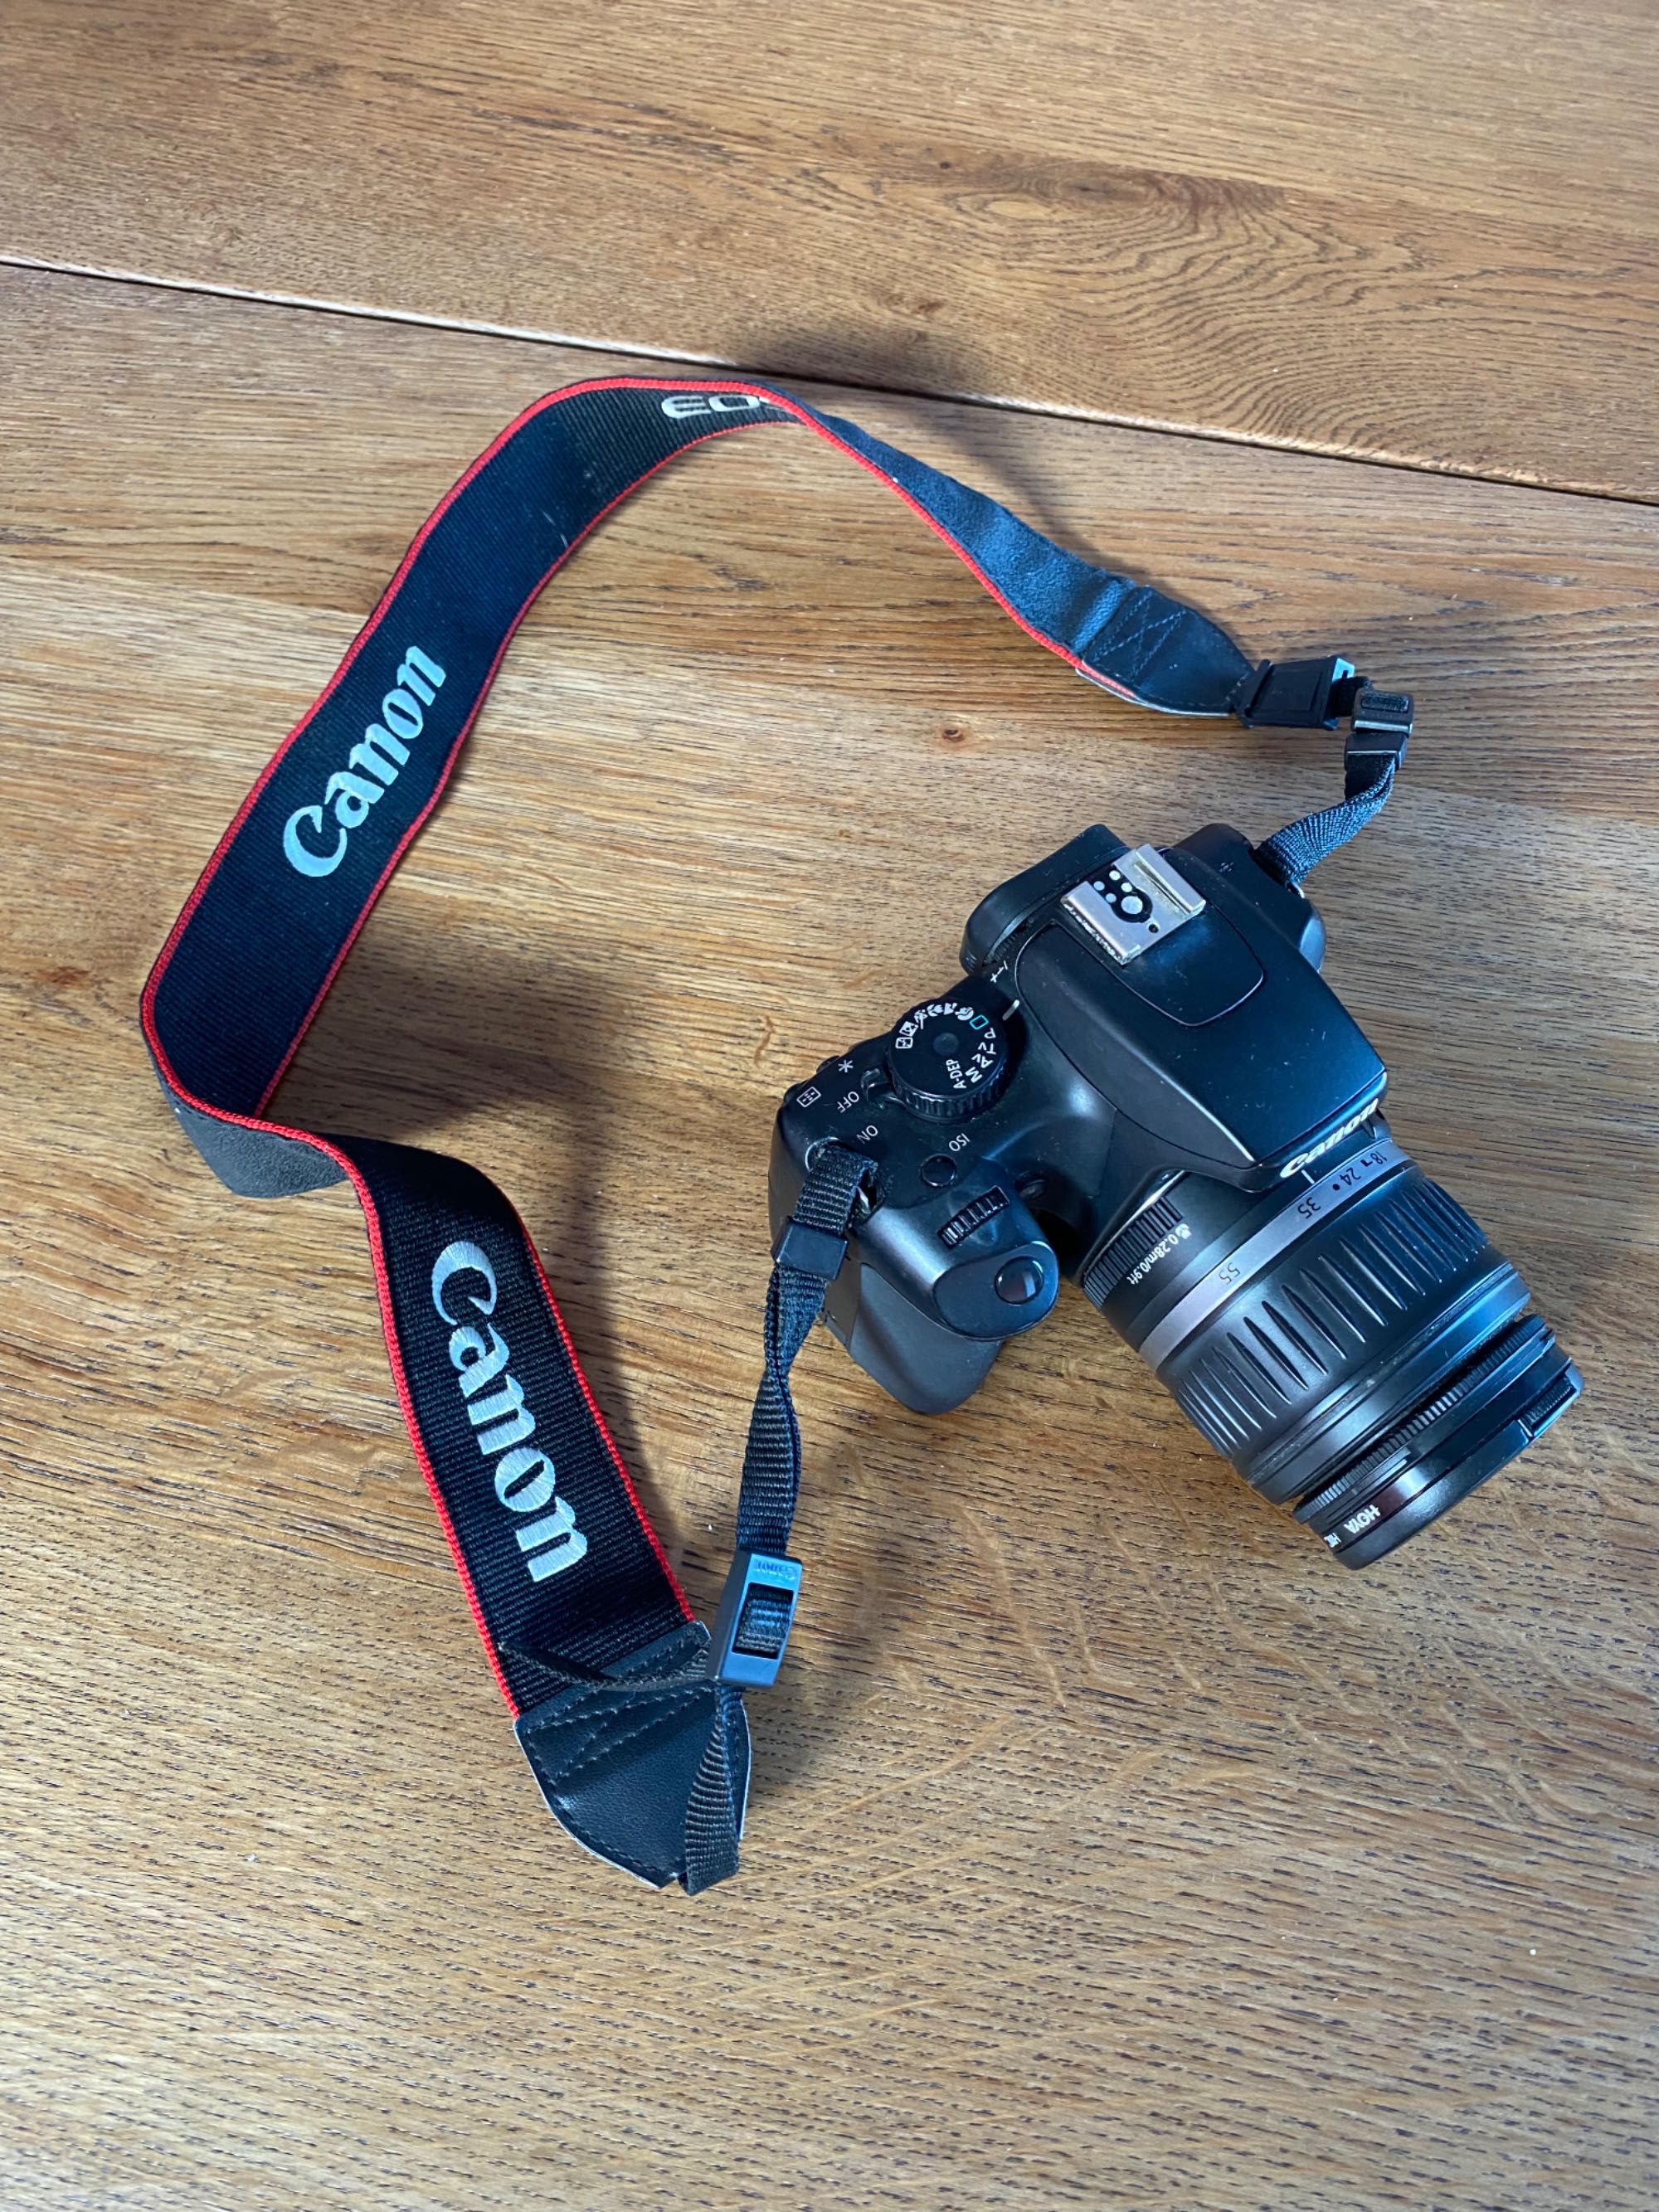 Canon EOS 1000D + Lente 18-55mm